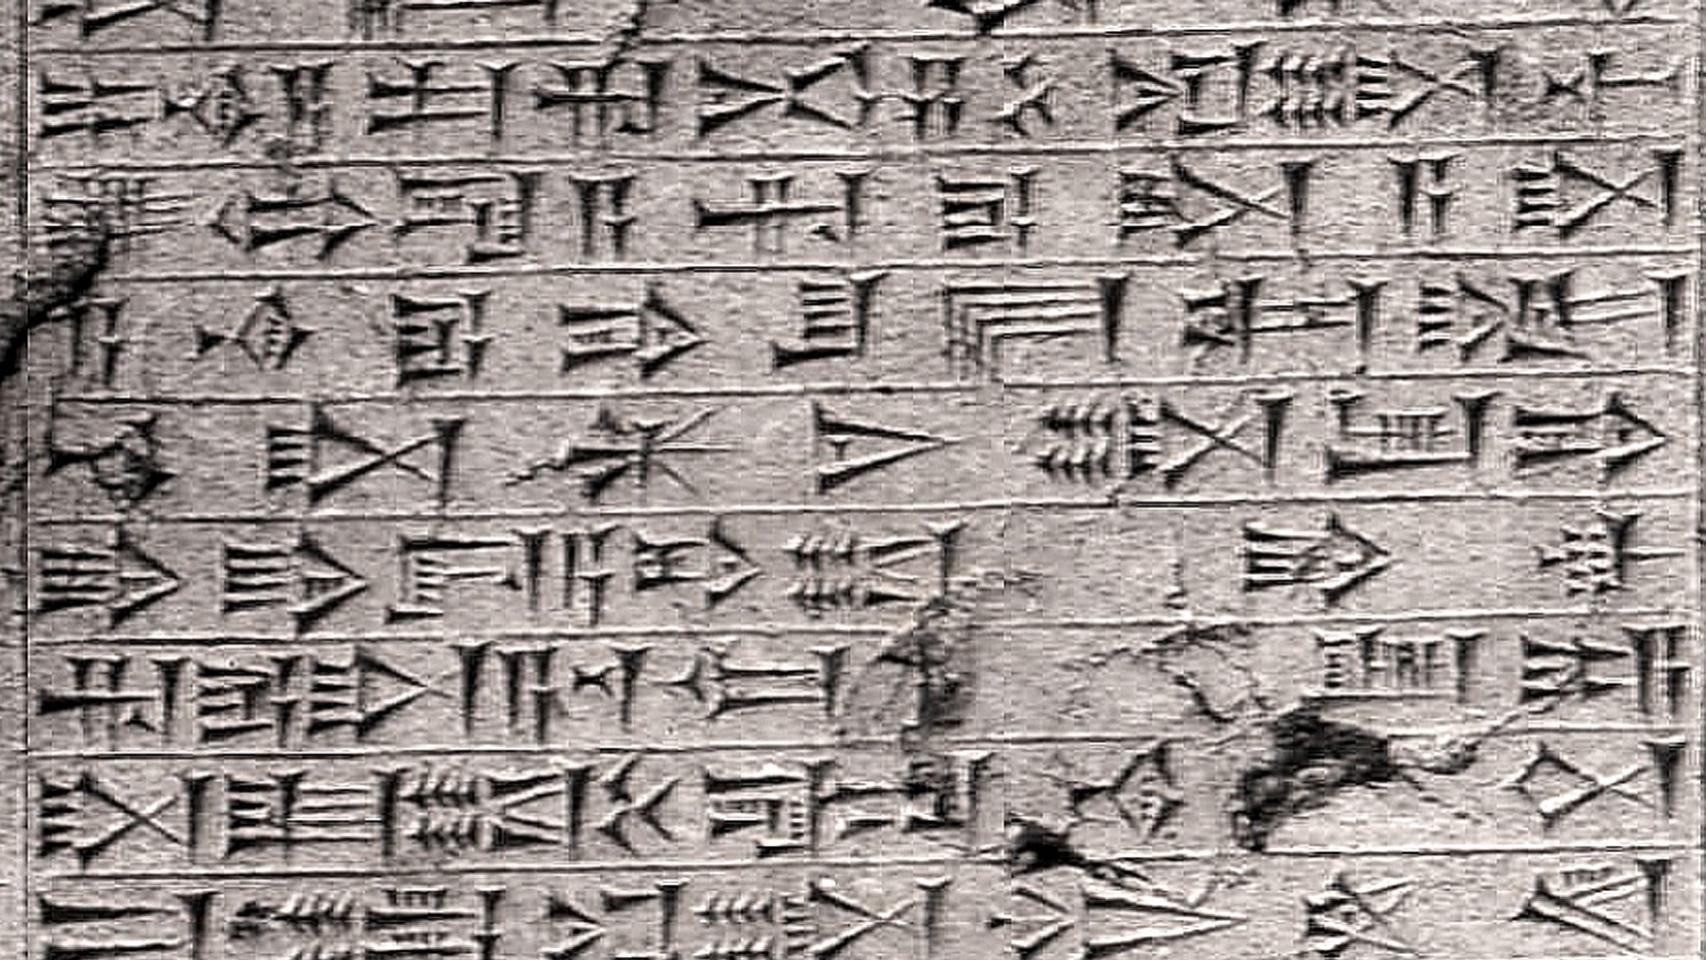 Escritura cuneiforme en una tabla de roca.